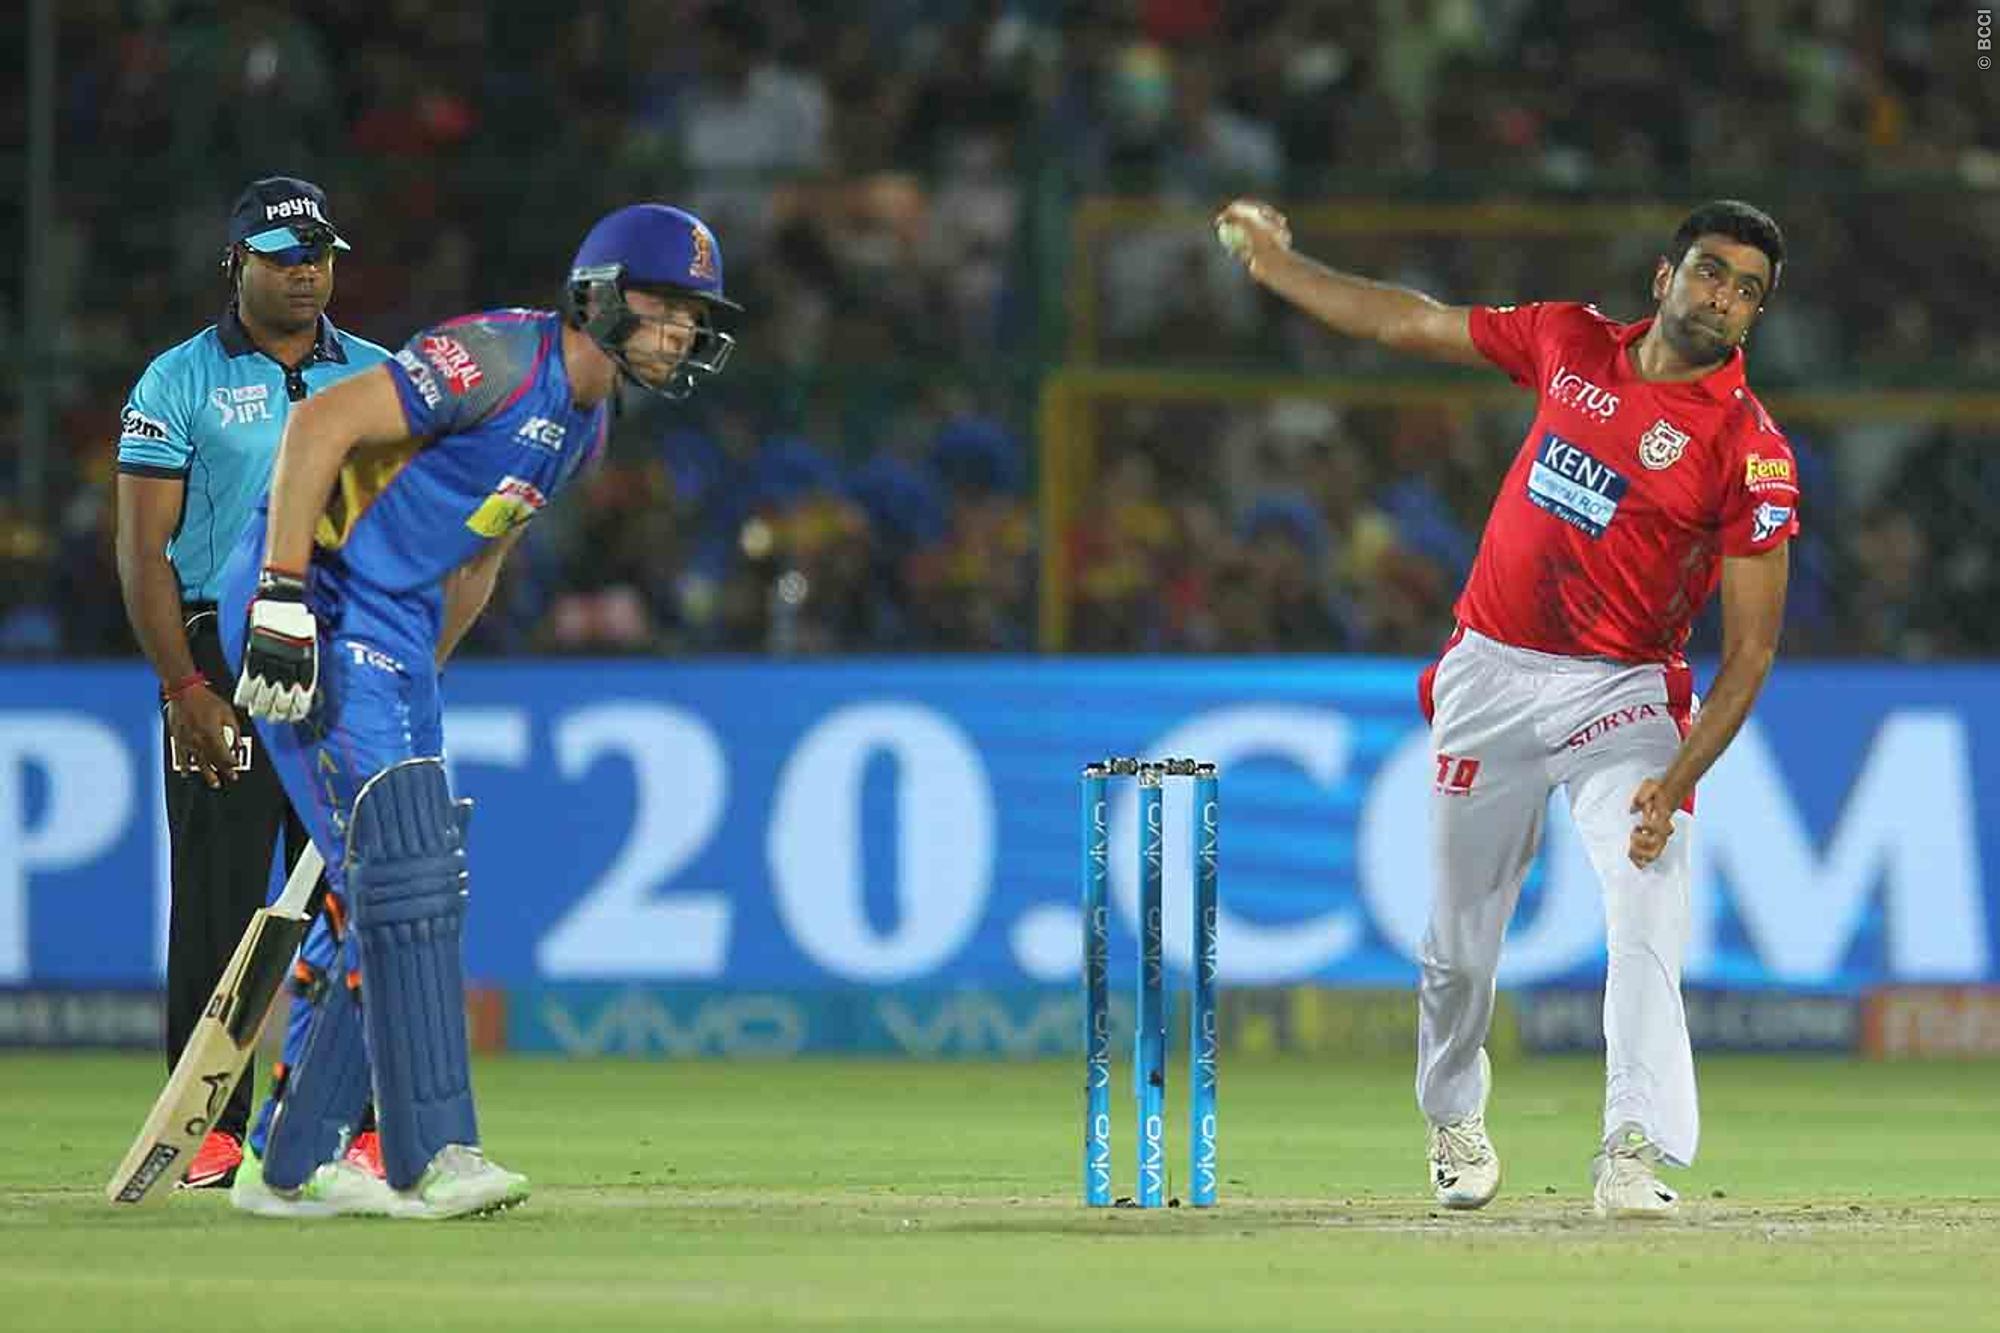 STATS: पंजाब और राजस्थान के बीच हुए मैच पर बने कुल 9 रिकॉर्ड, ऐसा करने वाले एकलौते बल्लेबाज बने लोकेश राहुल 1